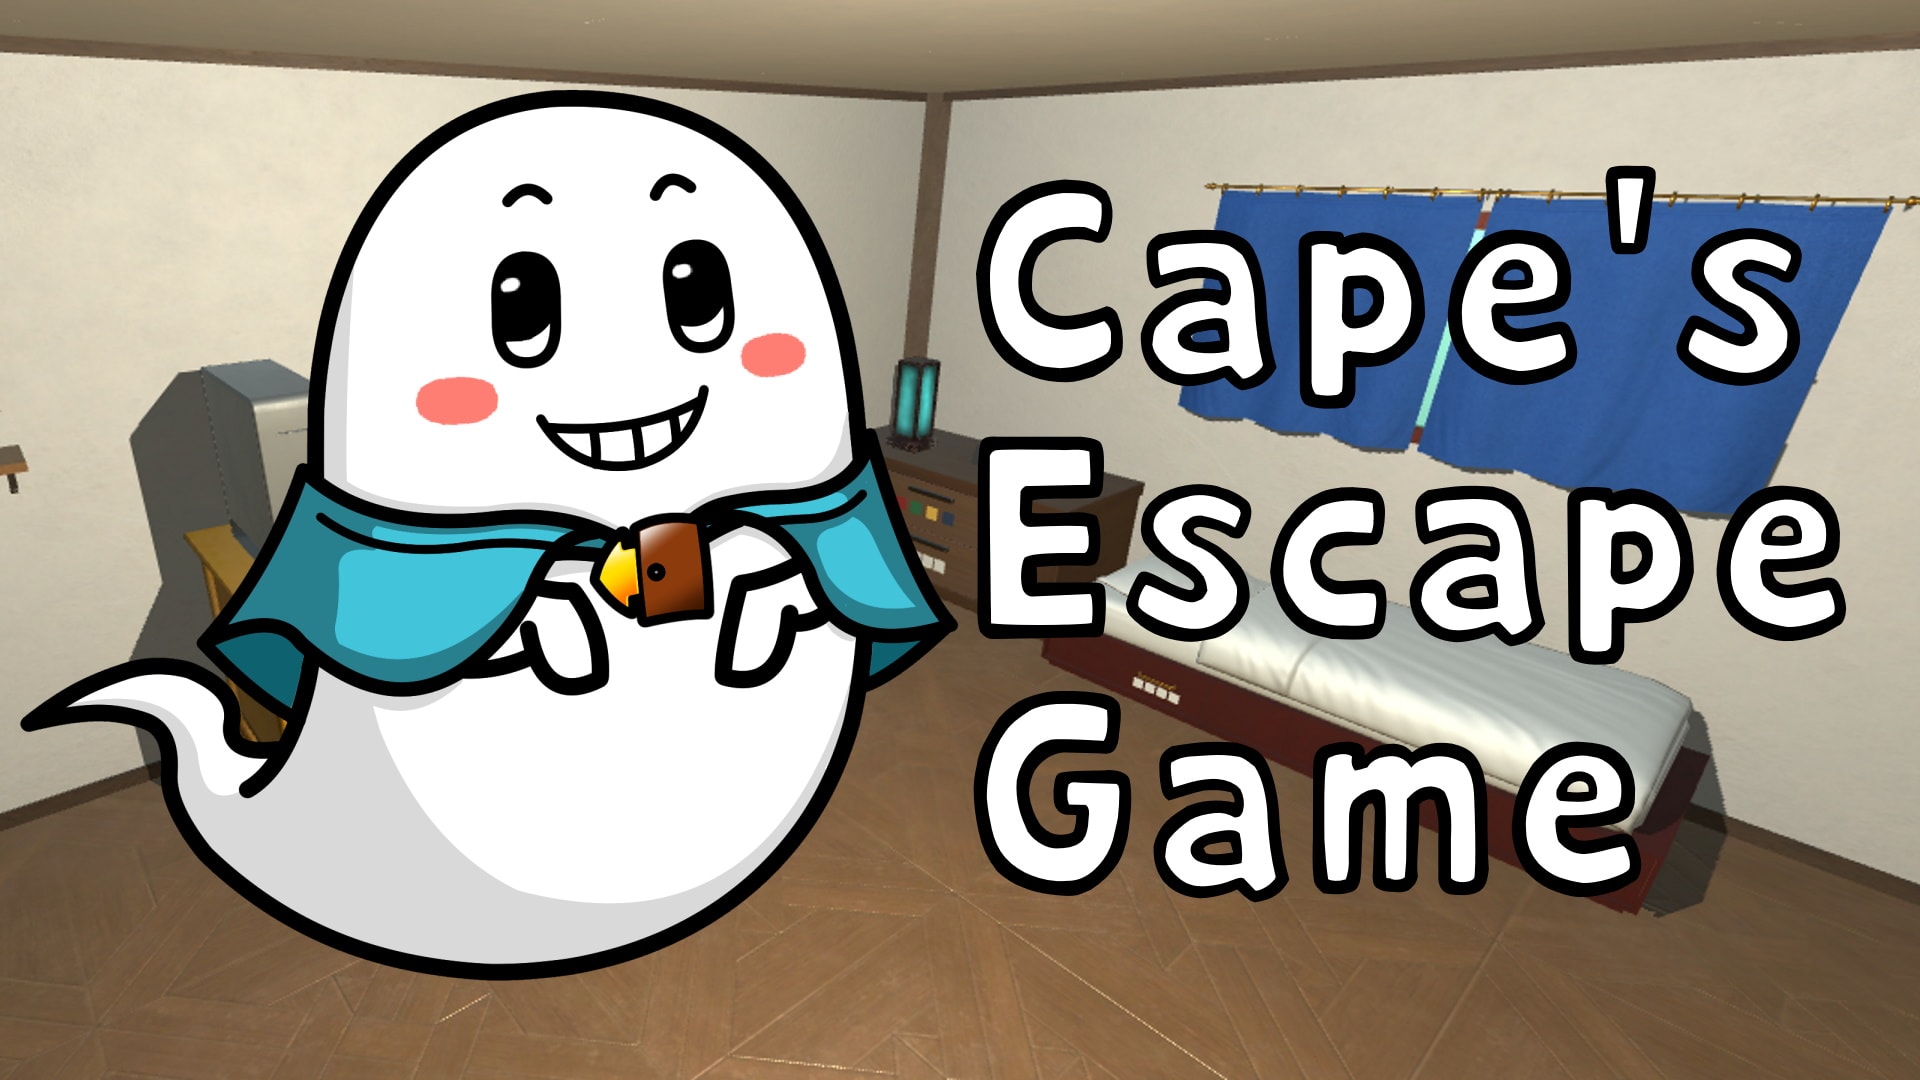 Cape's escape game